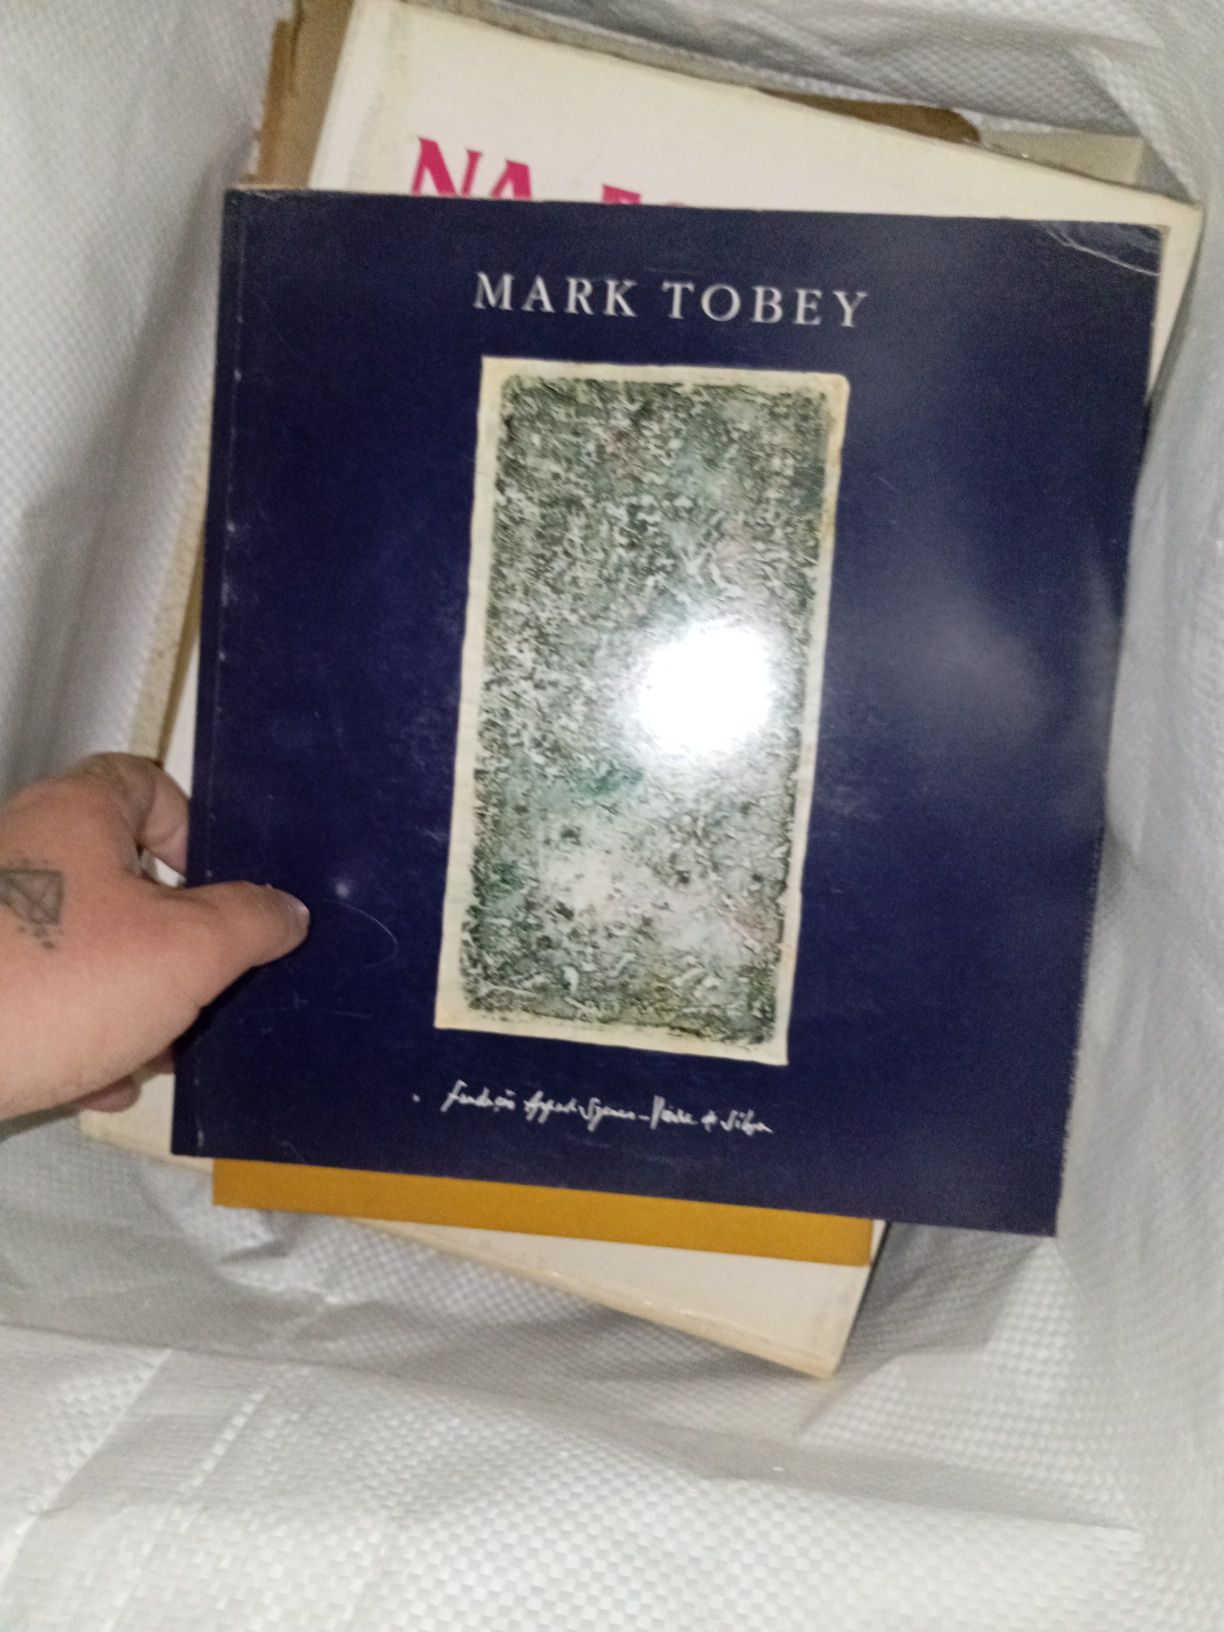 Mark tobey livro fundação Vieira da silva